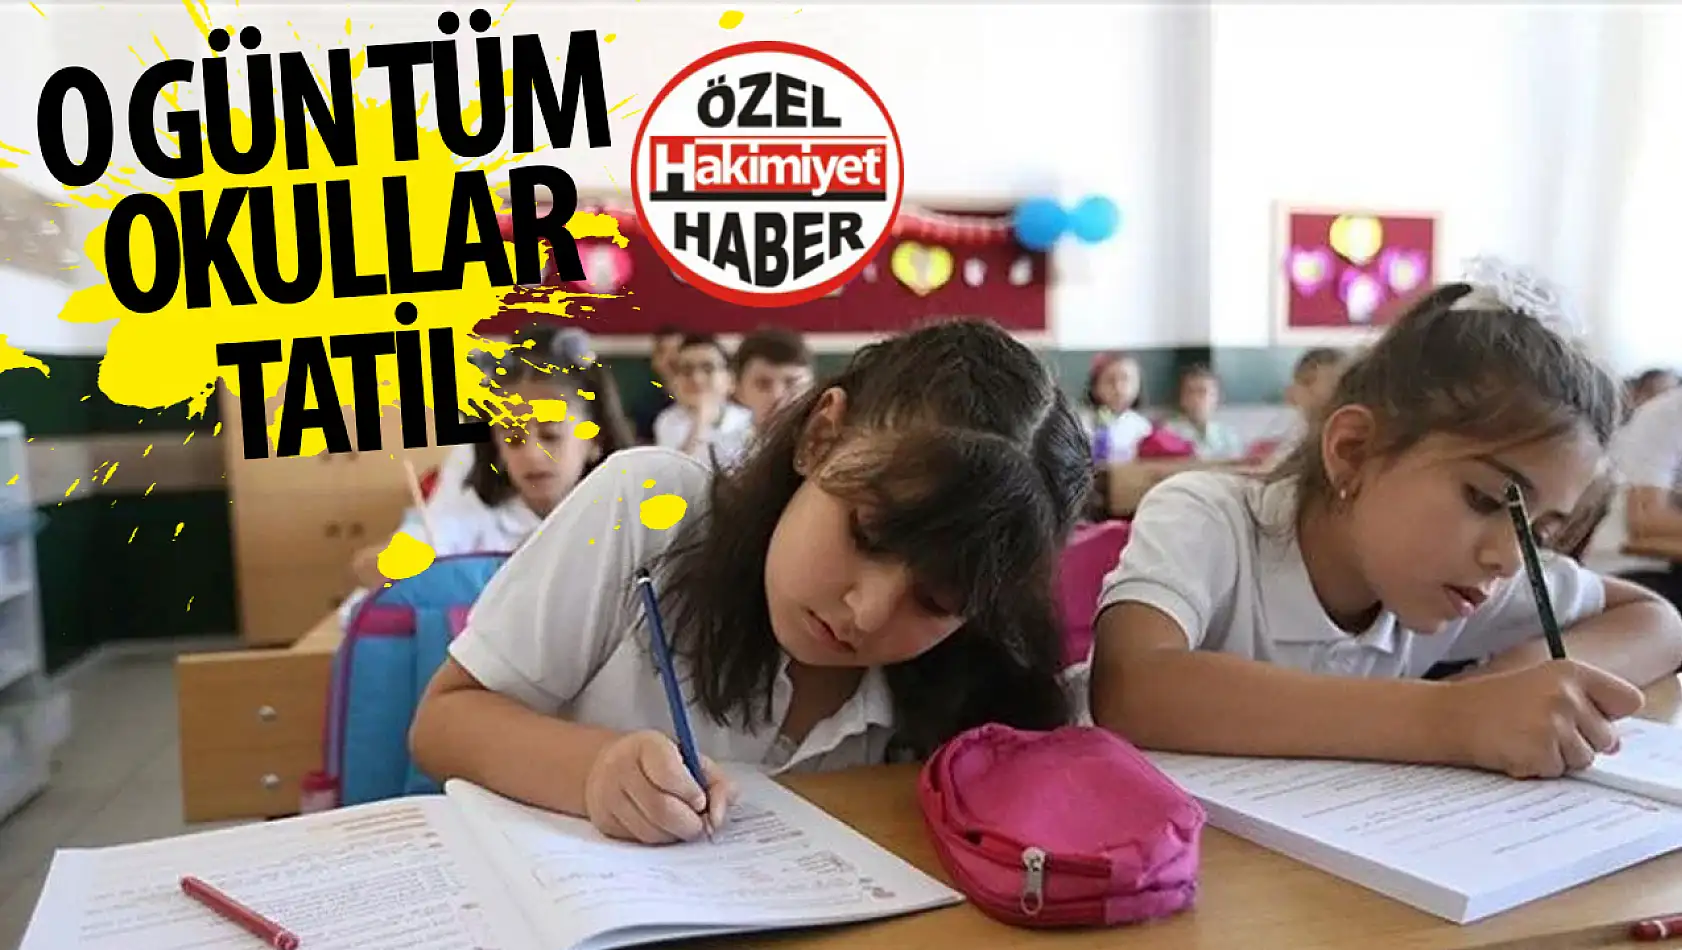 Öğrenciler müjde bir tatil haberi daha: O gün tüm Türkiye'de okullar kapalı!